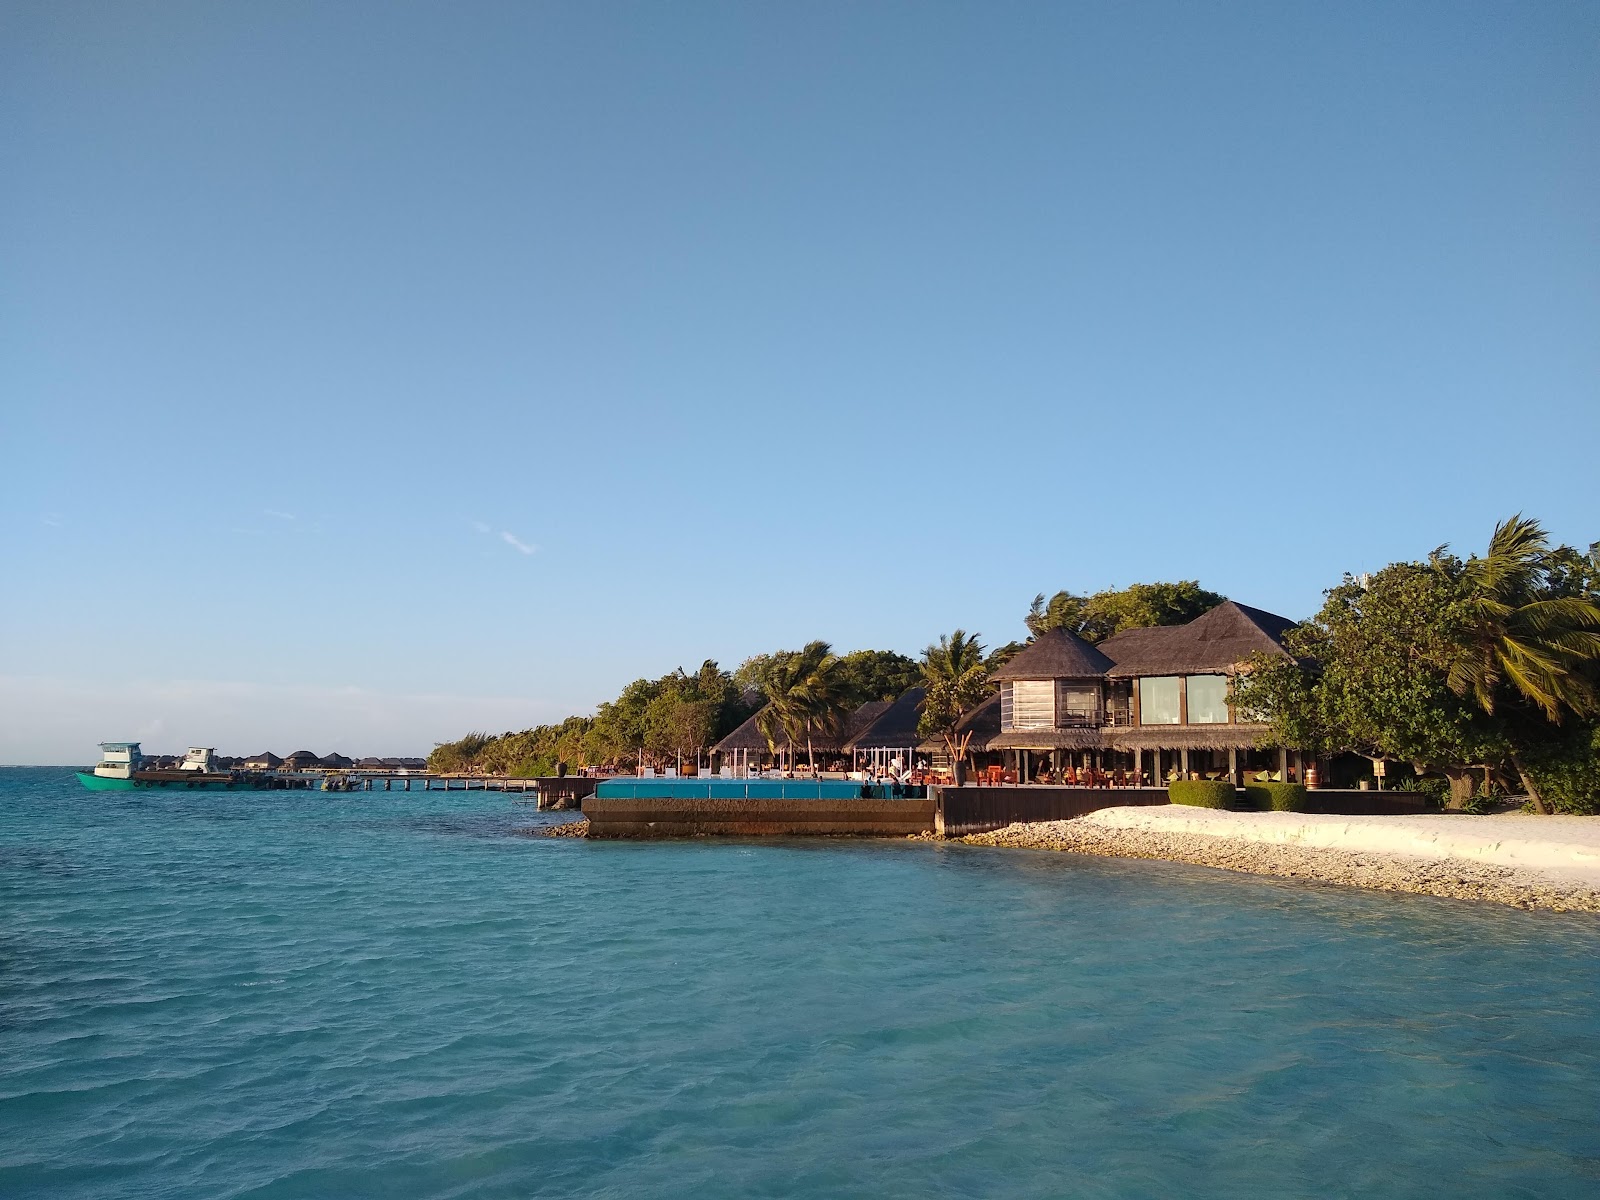 Zdjęcie Coco Bodu Hithi Resort - popularne miejsce wśród znawców relaksu